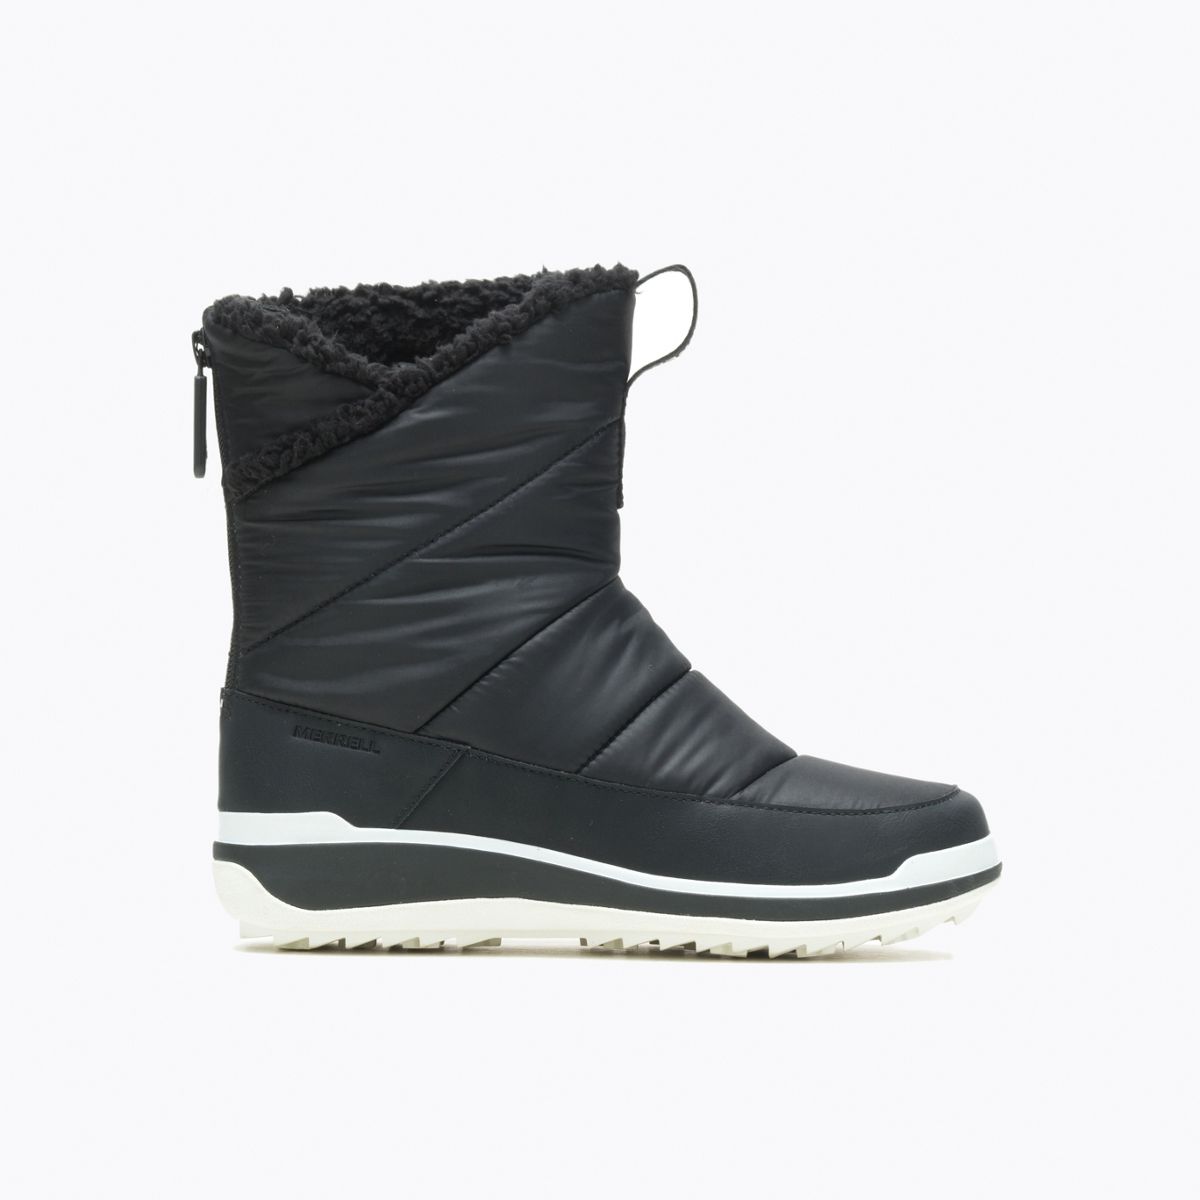 New MERRELL Polar Waterproof black lightweight boots RRP $199 Size 9, 40